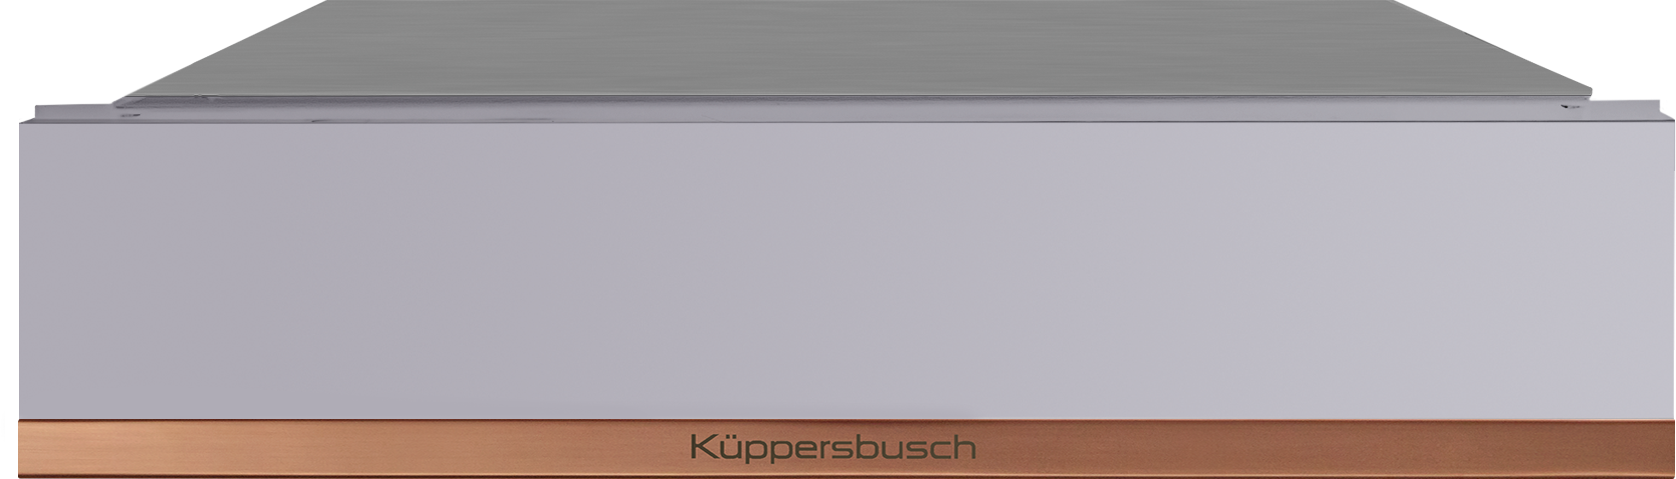 Kuppersbusch CSV 6800.0 G7 - фотография № 2